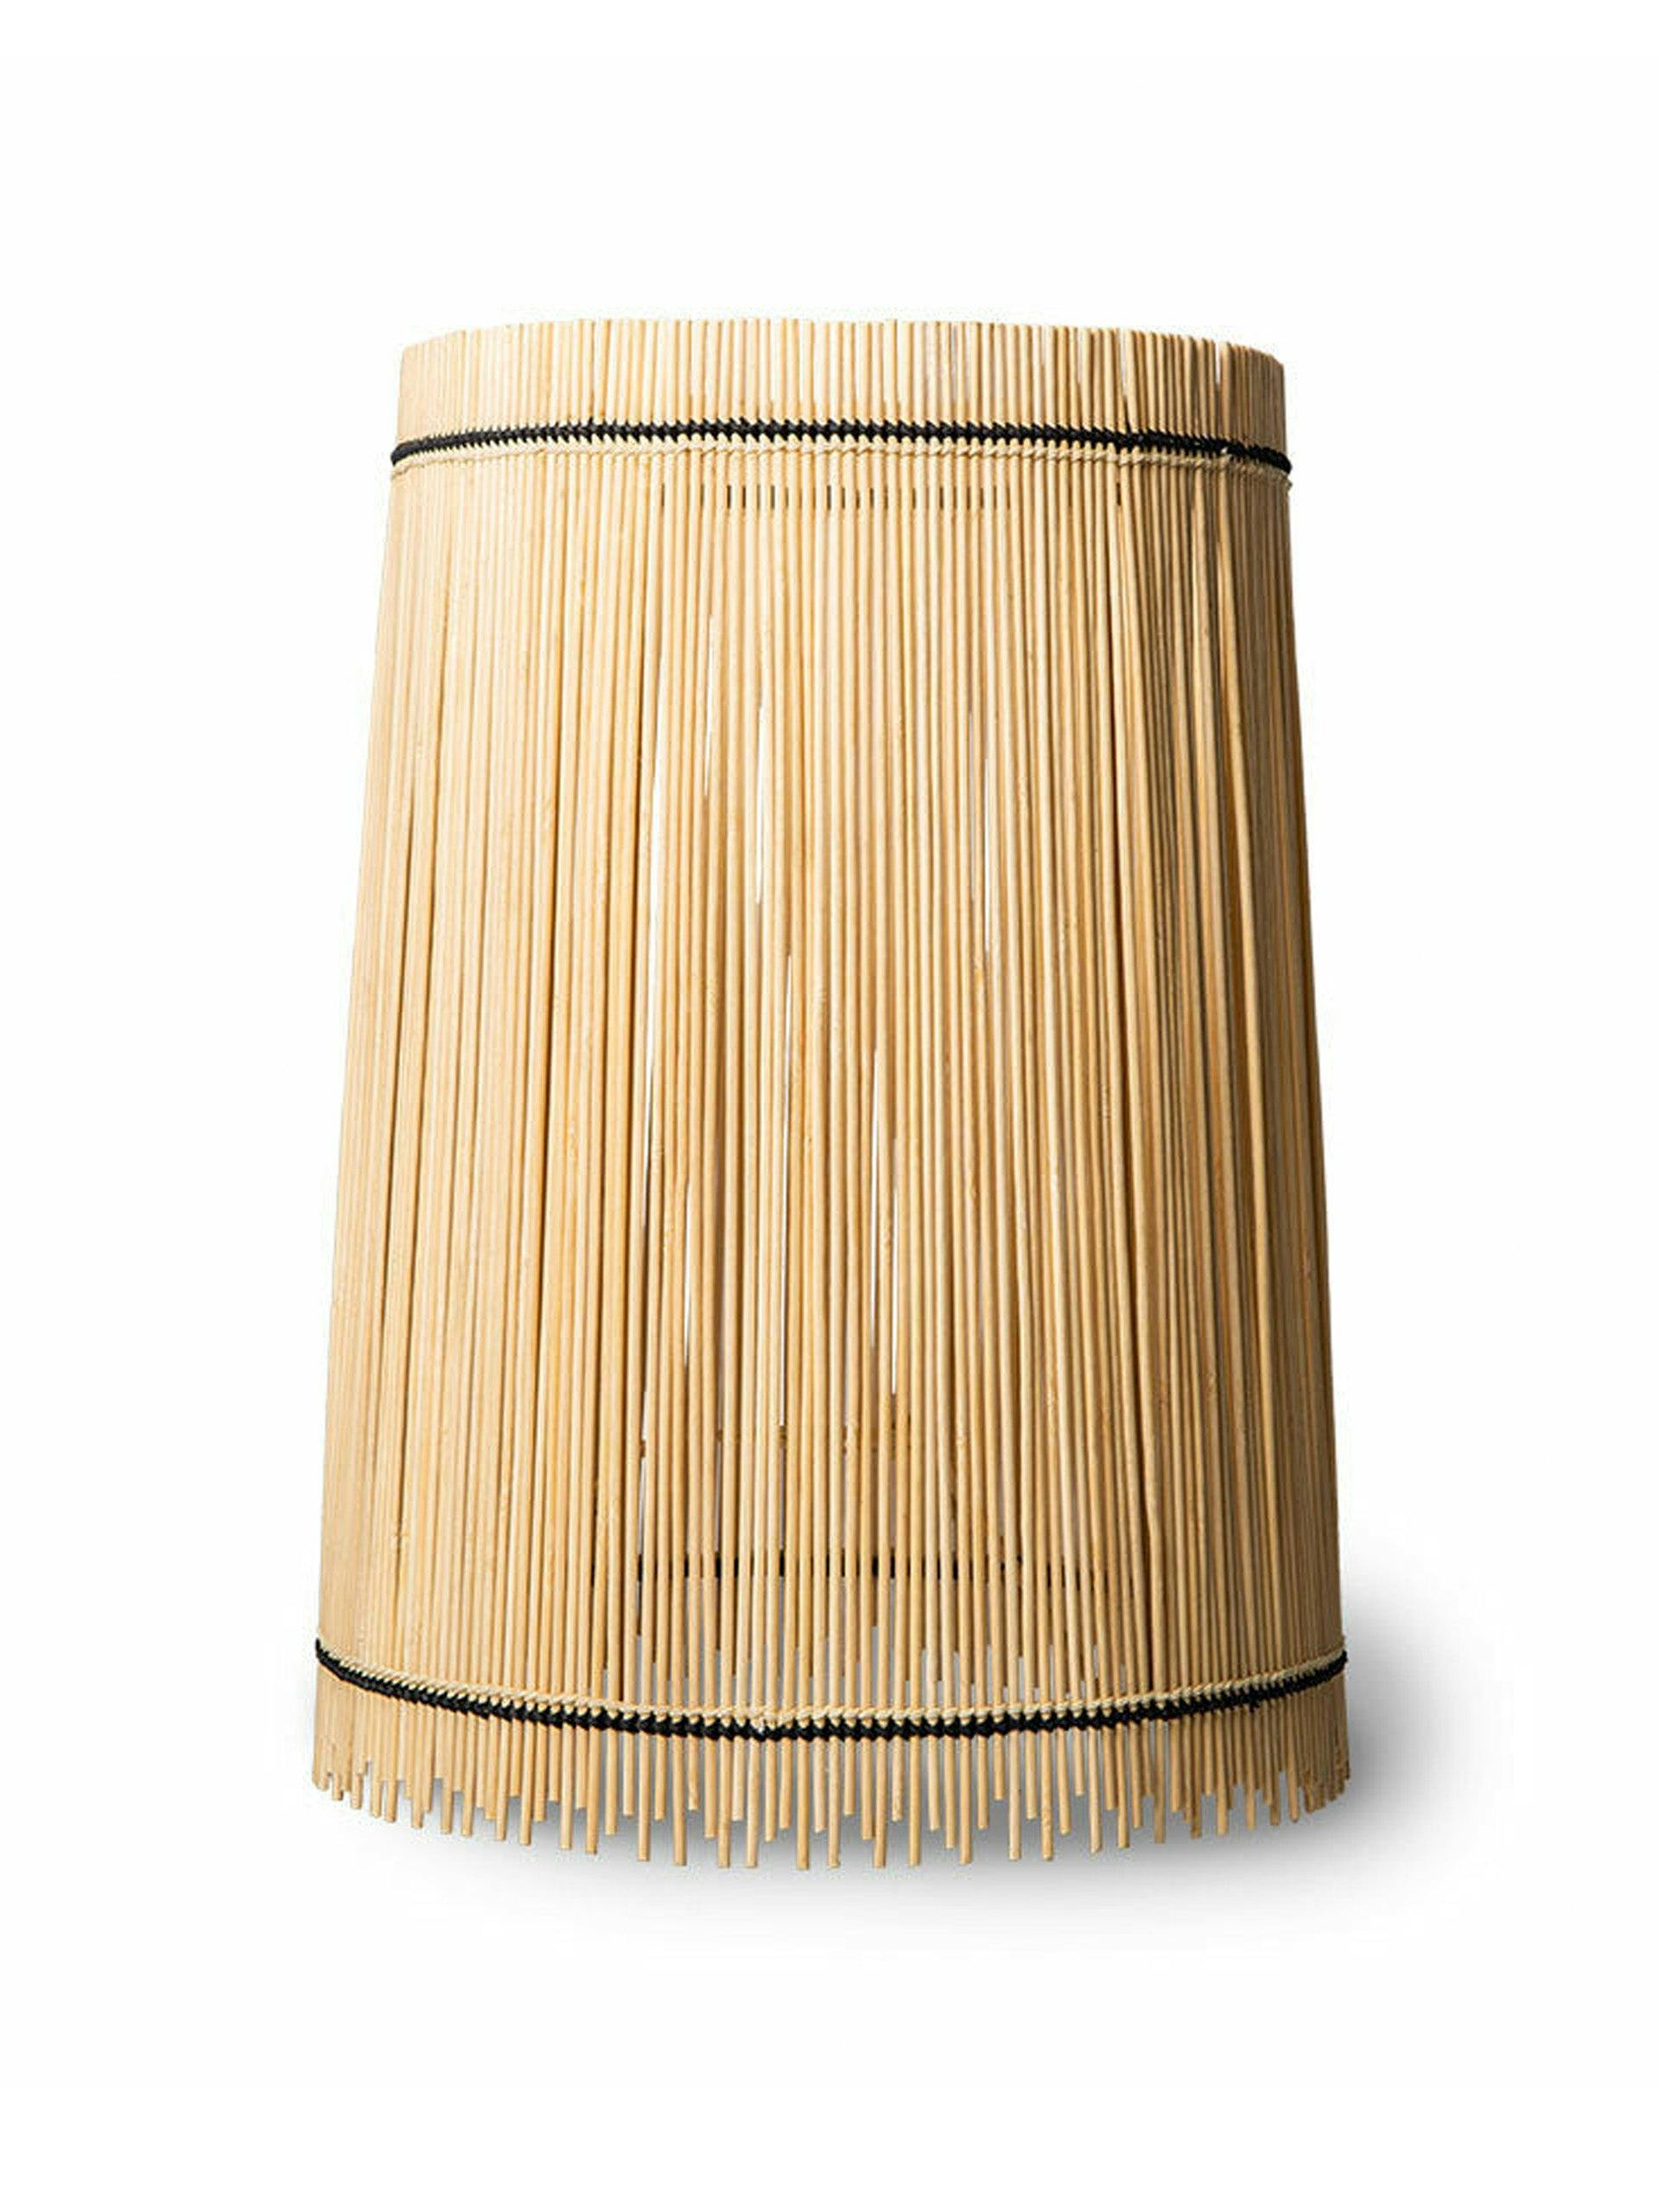 Bamboo cone lampshade